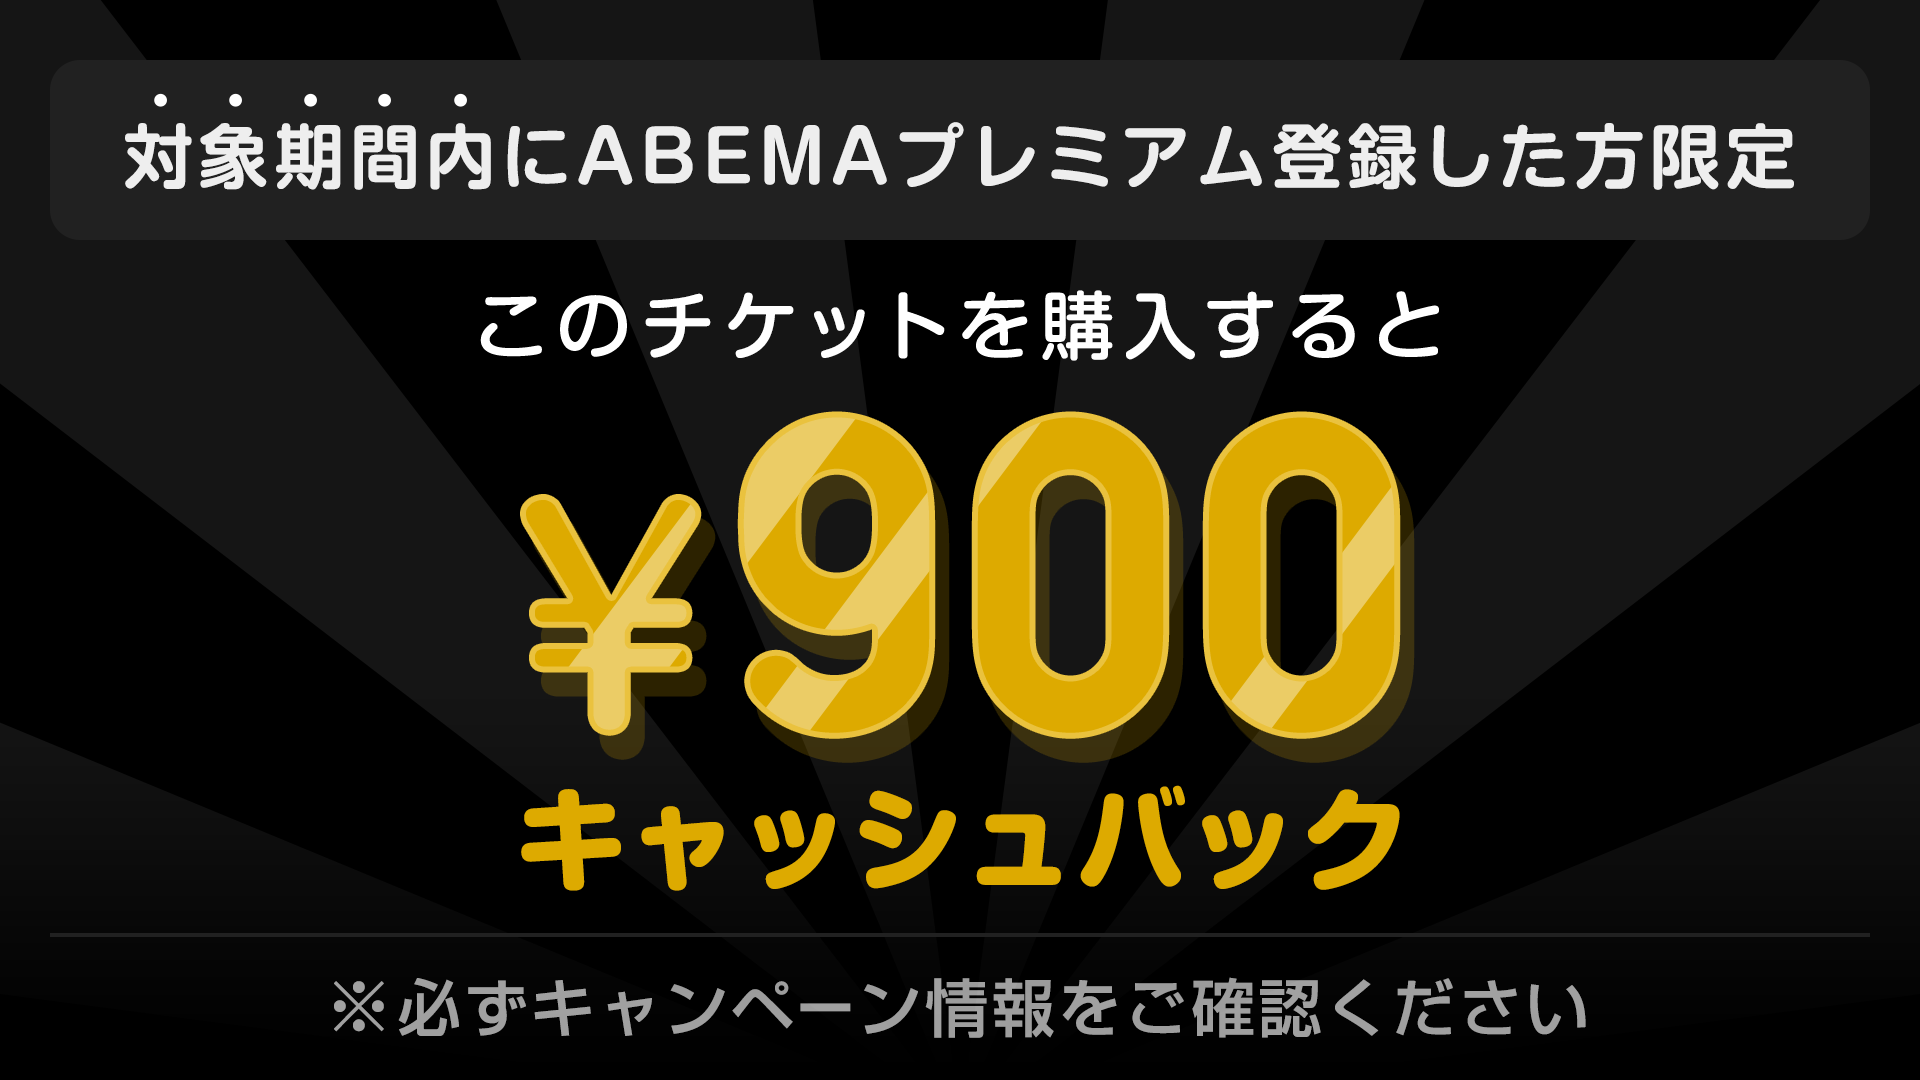 対象期間内にABEMAプレミアム登録した方限定 このチケットを購入すると ¥900キャッシュバック